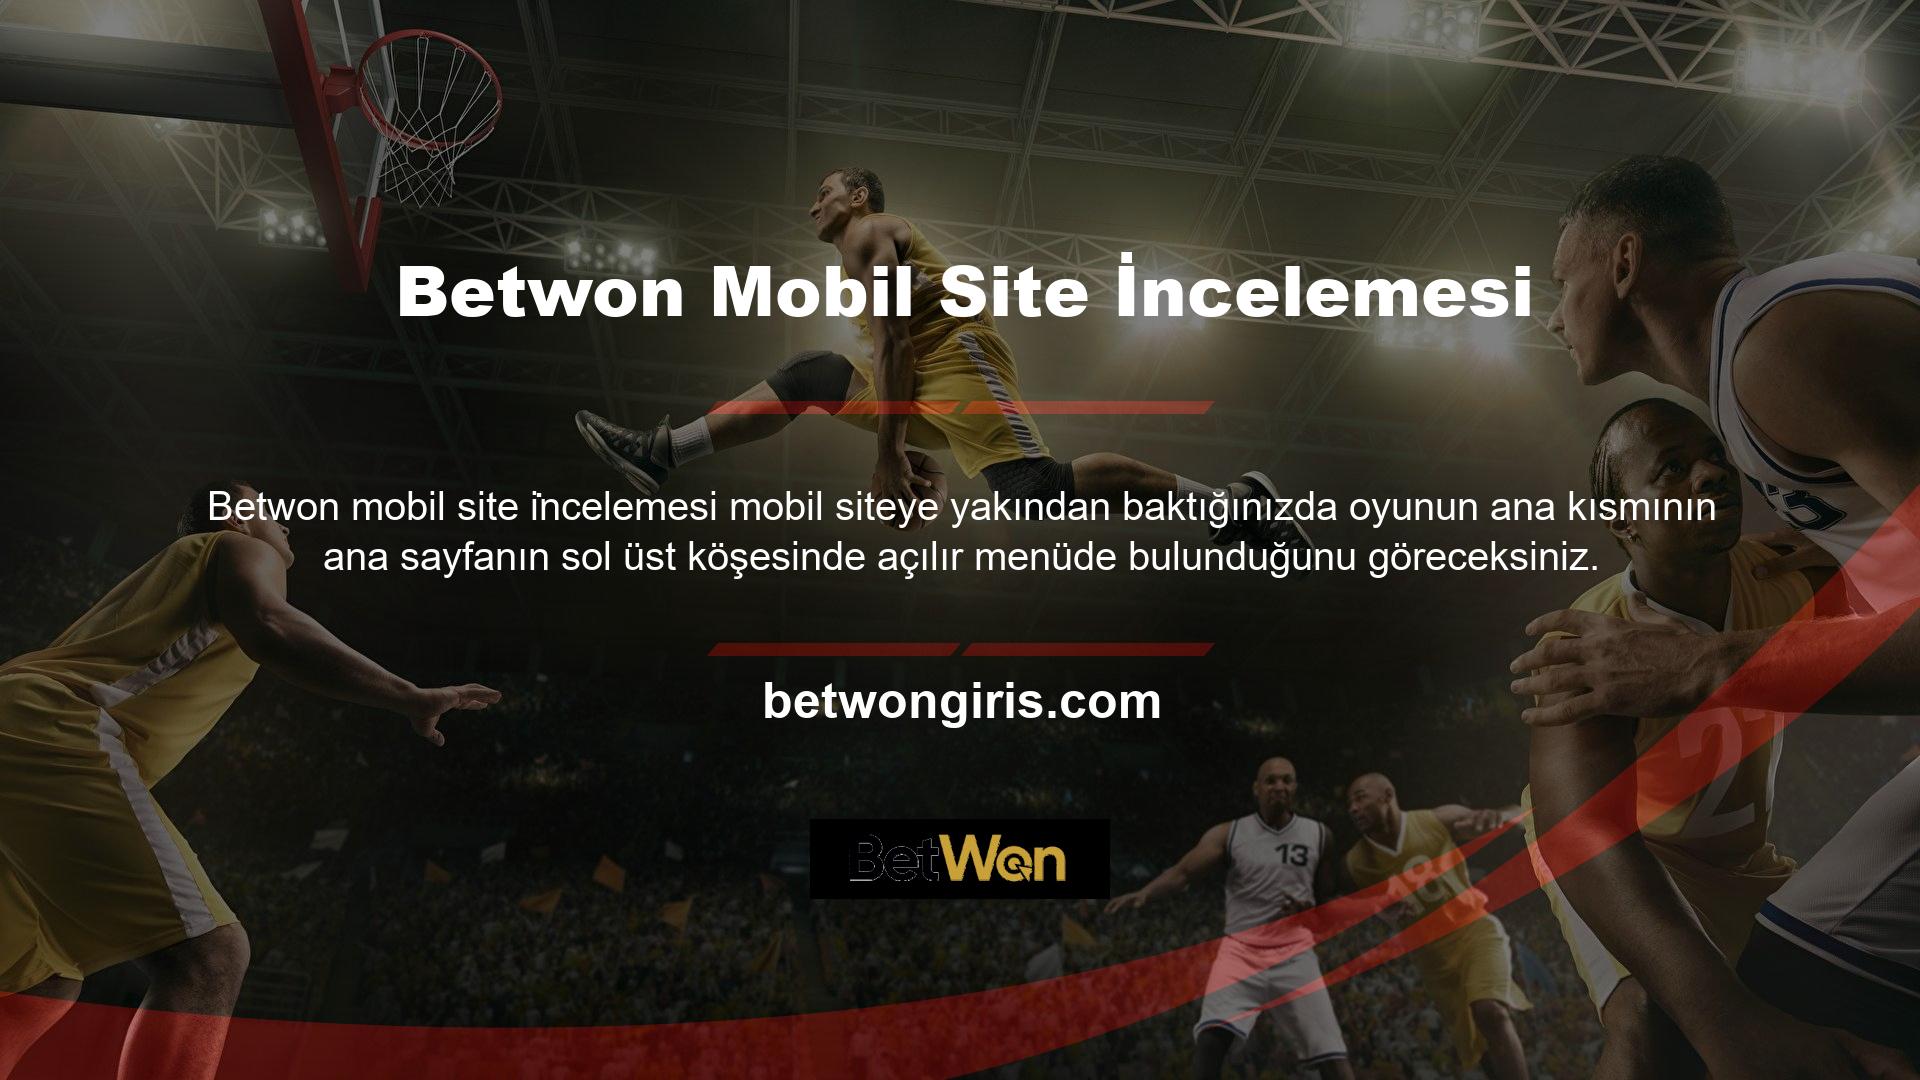 Betwon mobil web sitesinin ana sayfasının sağ üst köşesinde Türkçe, İngilizce, Almanca ve Fransızcayı destekleyen hızlı bir karşılaştırma çubuğu bulunmaktadır